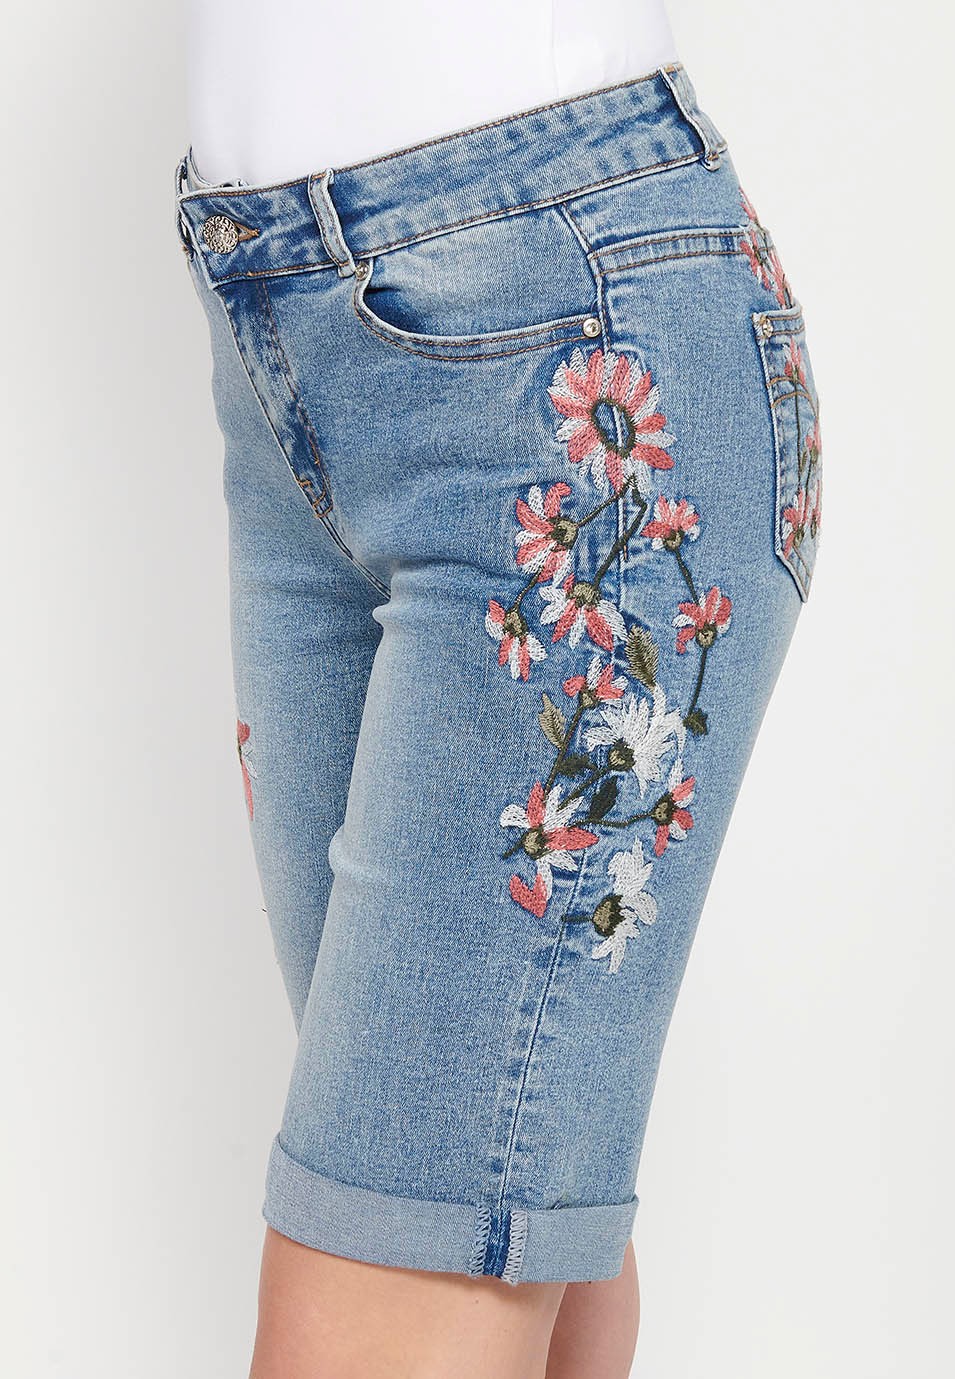 Pantalón corto con bordados florales, color azul para mujer